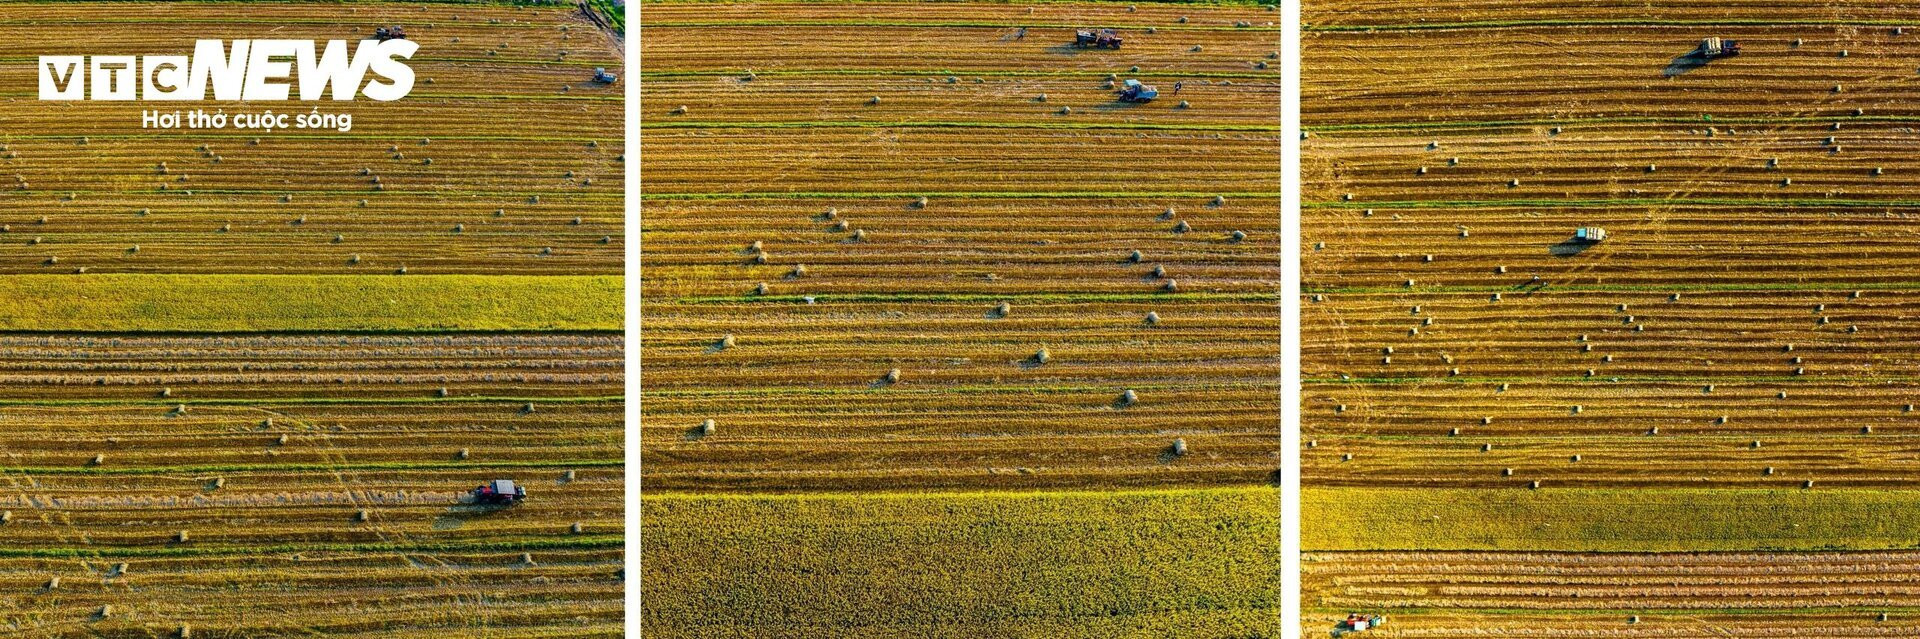 Ngắm 'mùa vàng' bình yên trên những cánh đồng lúa tại Bình Định - 10